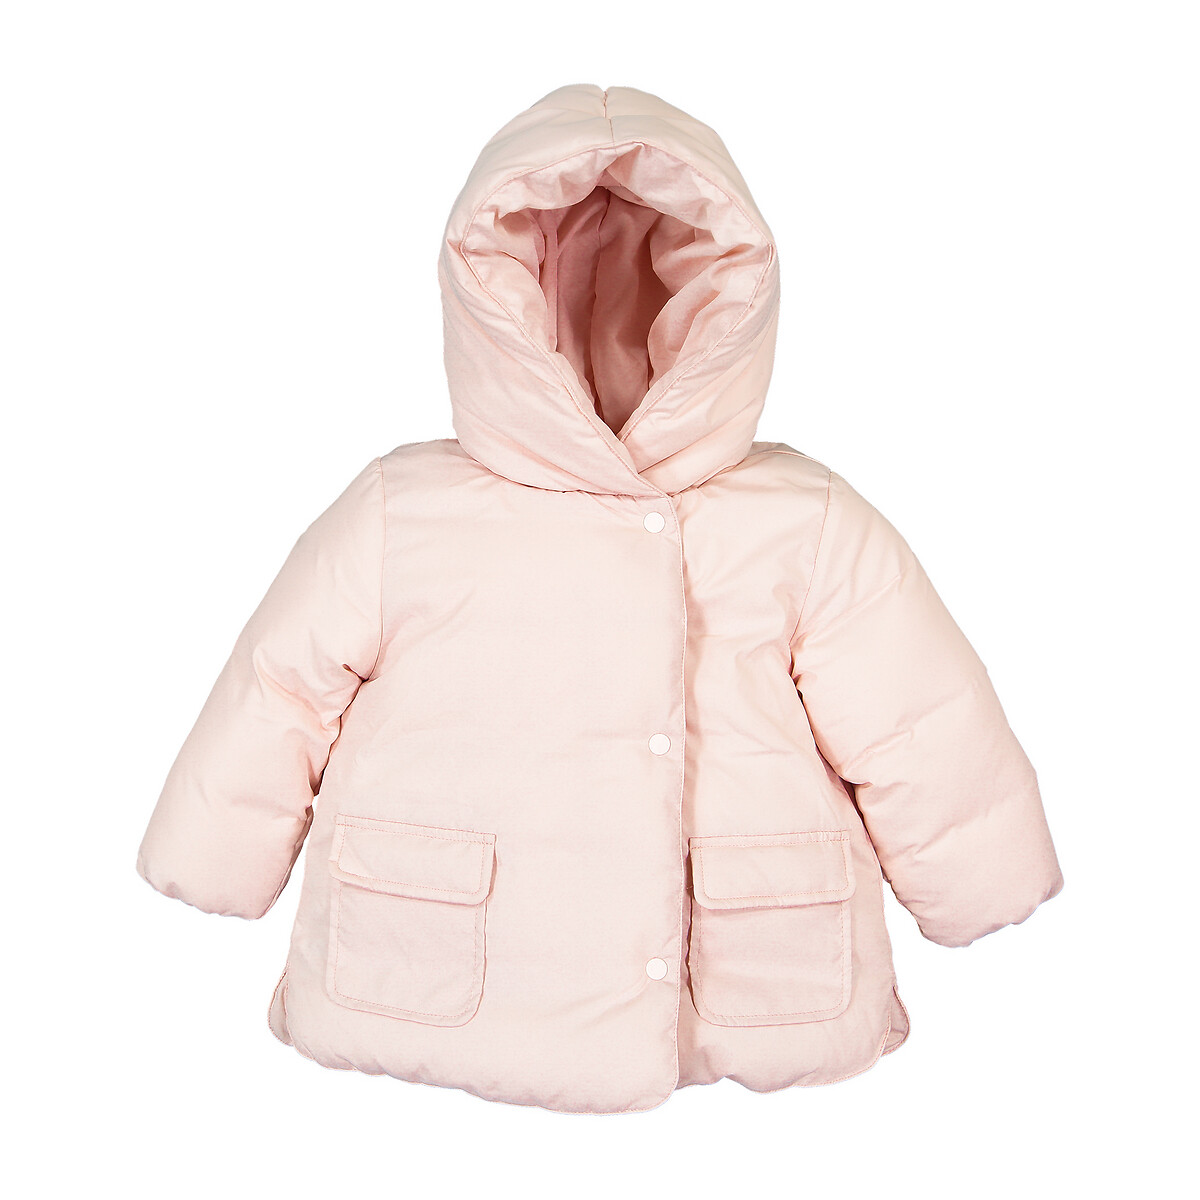 Куртка La Redoute Стеганая утепленная с капюшоном 3 мес-4 года 6 мес. - 67 см розовый, размер 6 мес. - 67 см - фото 1